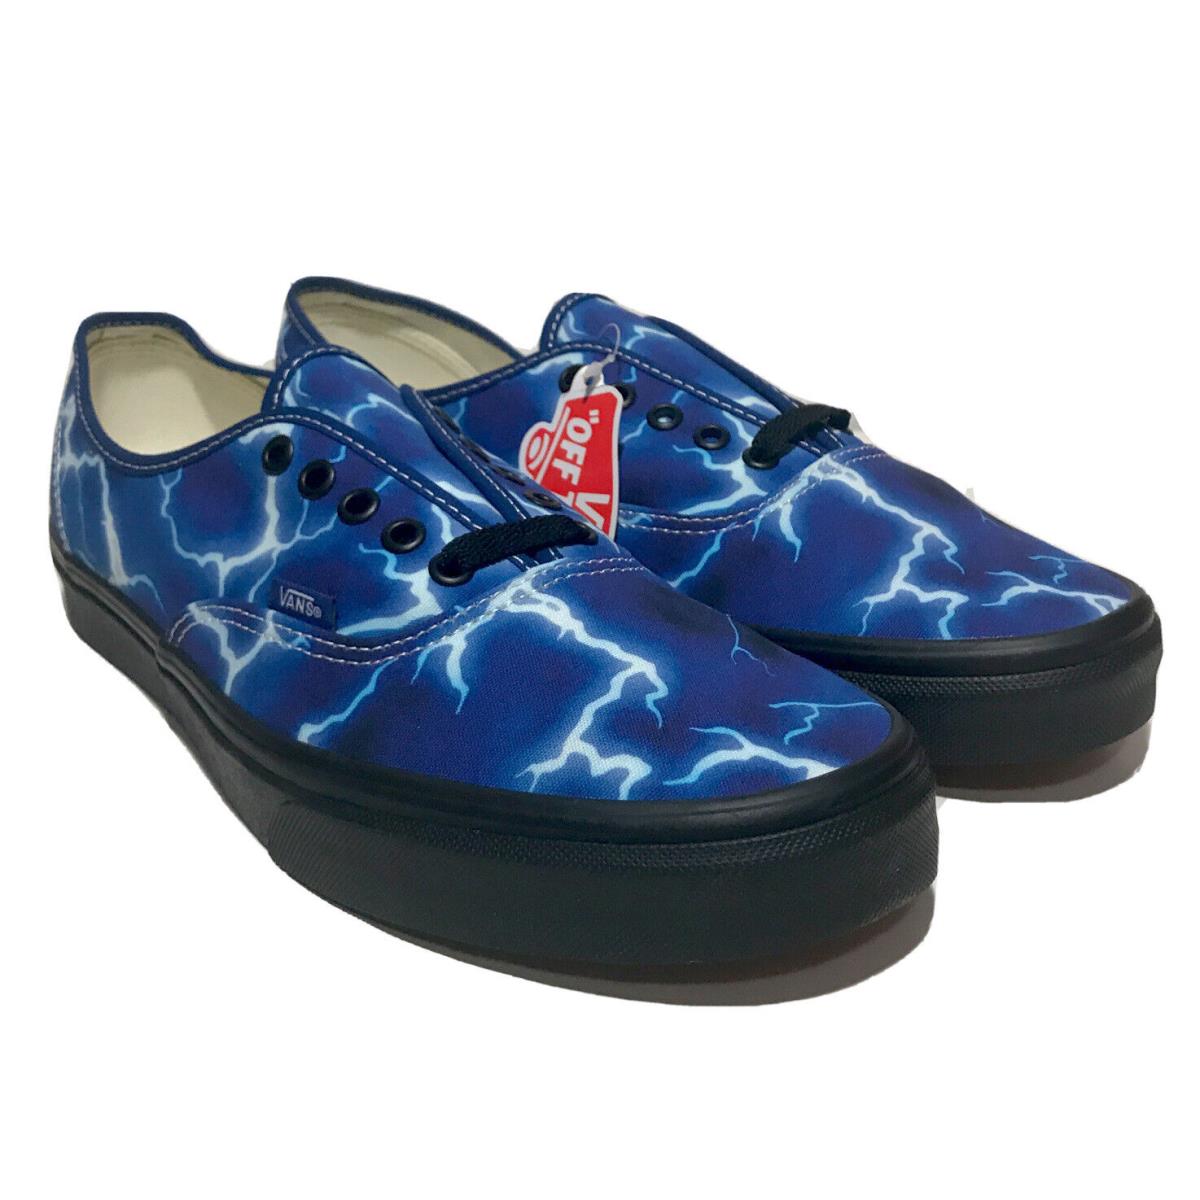 Vans Lightning Style Mens Size 11 Sneaker Blue Shoes Skateboarding